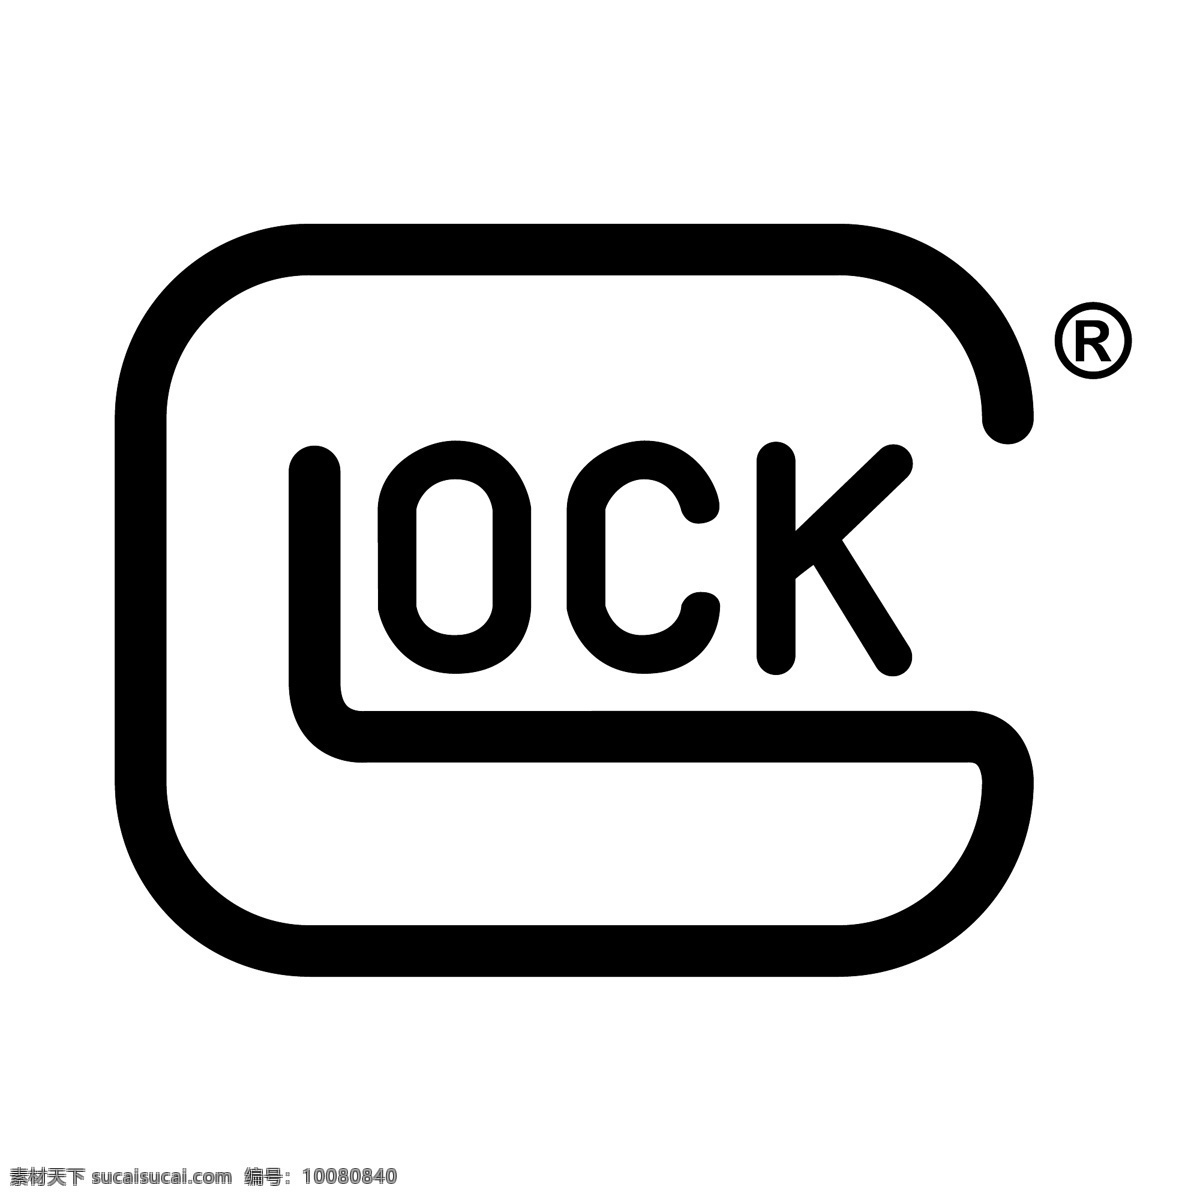 格洛克 手枪 logo 矢量 艺术 艺术载体 自由 免费 矢量图像 完善 图像 标志 格洛克手枪 建筑家居